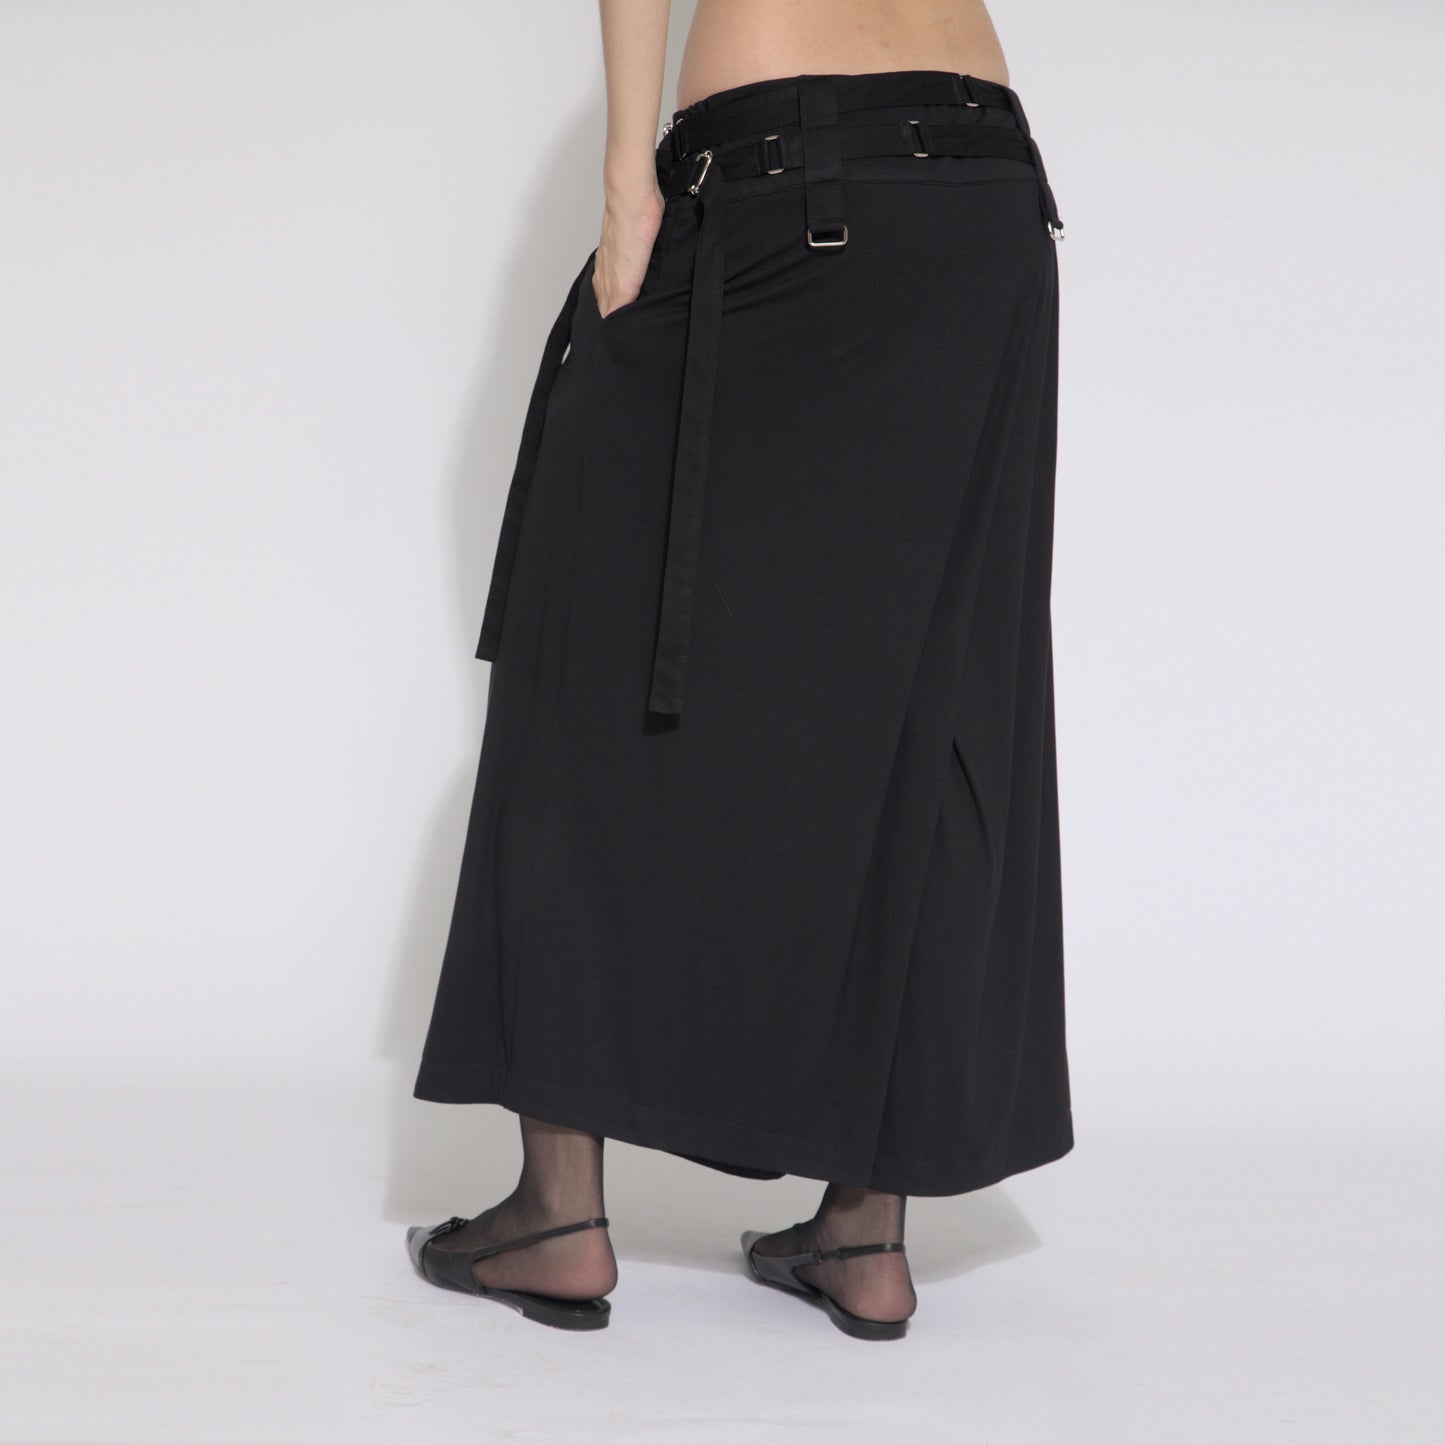 Khali - Saia-calça com cinto de malha e fivelinhas cor preta